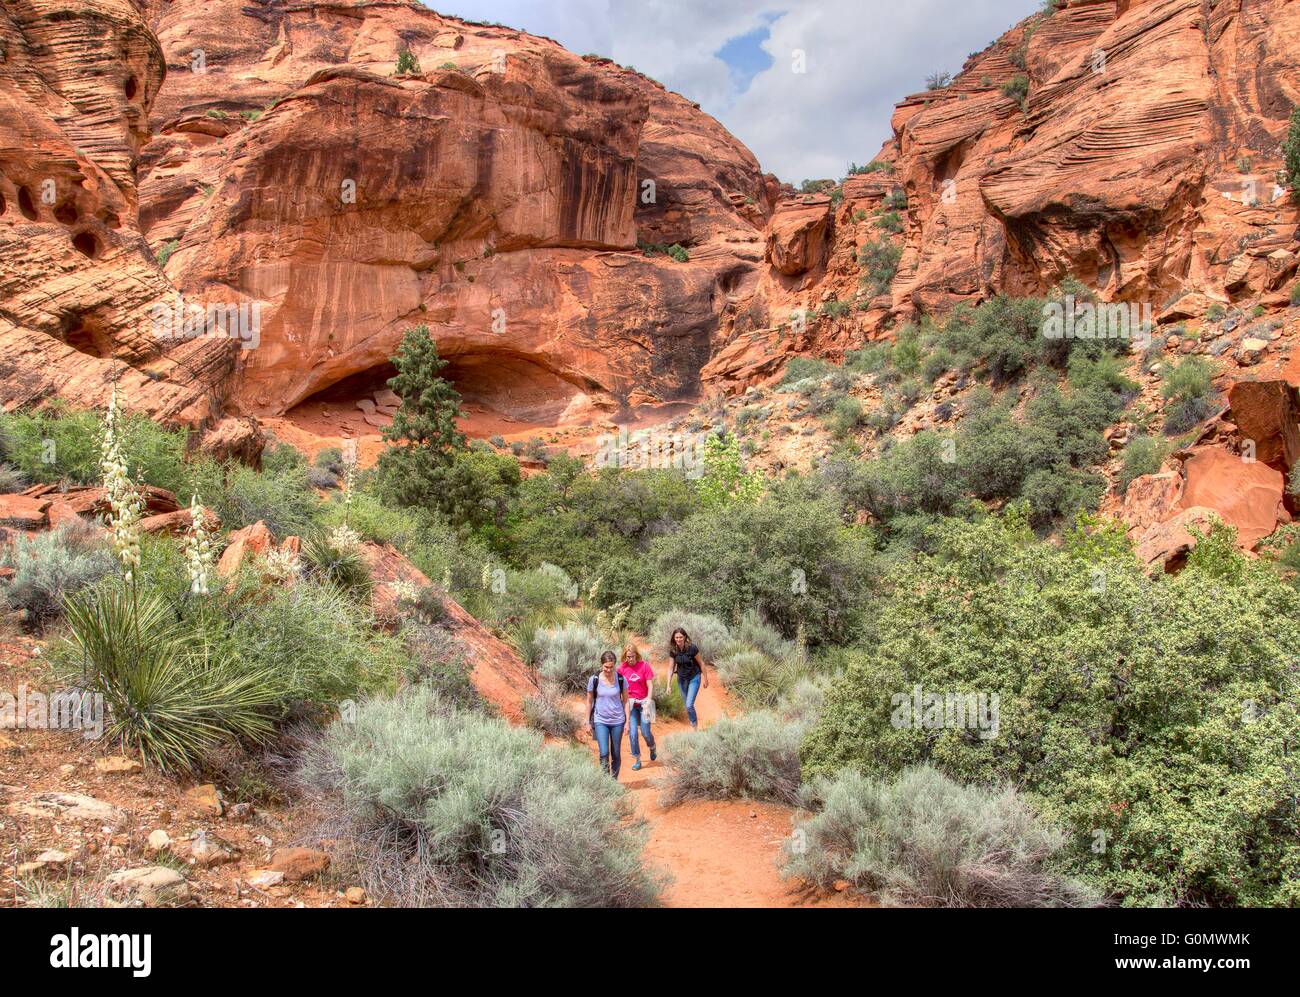 Les randonneurs font leur chemin à travers les collines de roche et de désert au Red Cliffs National Conservation Area, où le Plateau du Colorado, le désert du Grand Bassin, et chevauchement du désert de Mojave, près de Saint George, Utah. Banque D'Images